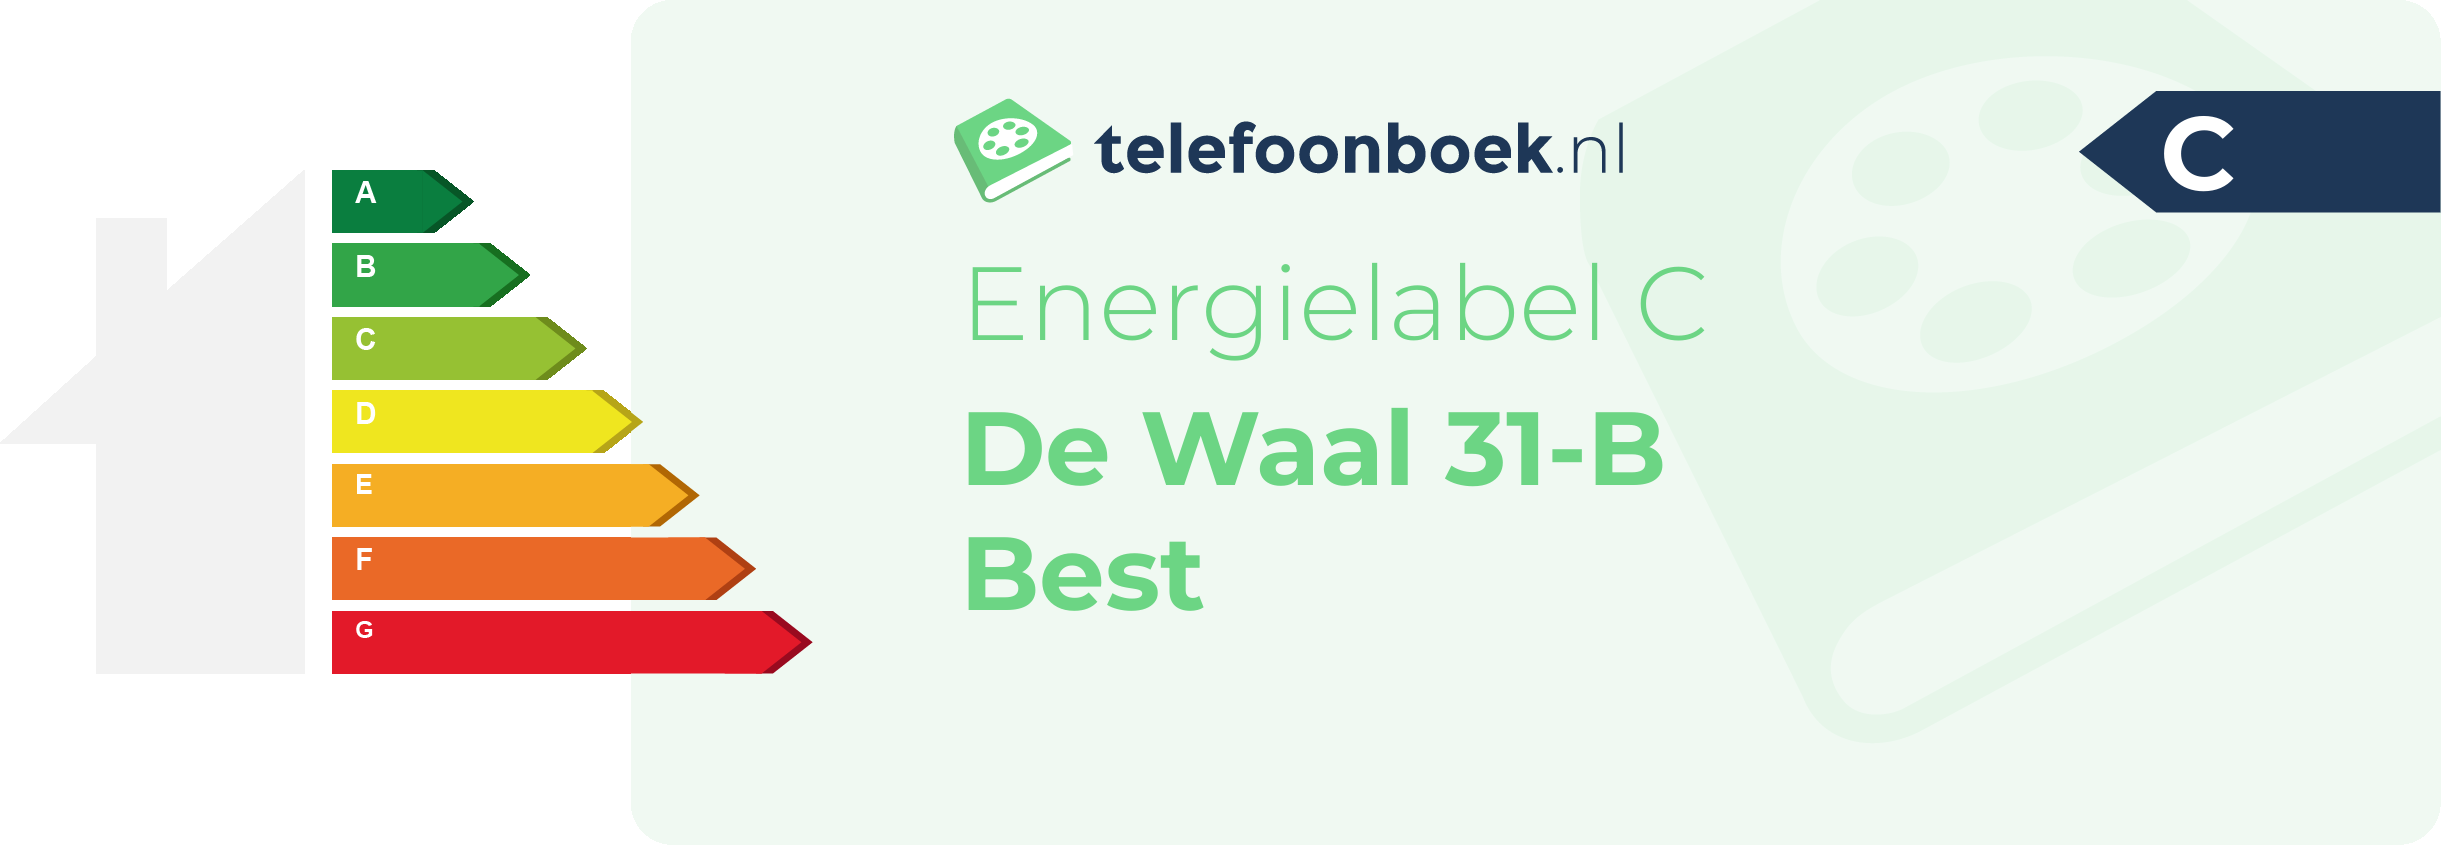 Energielabel De Waal 31-B Best